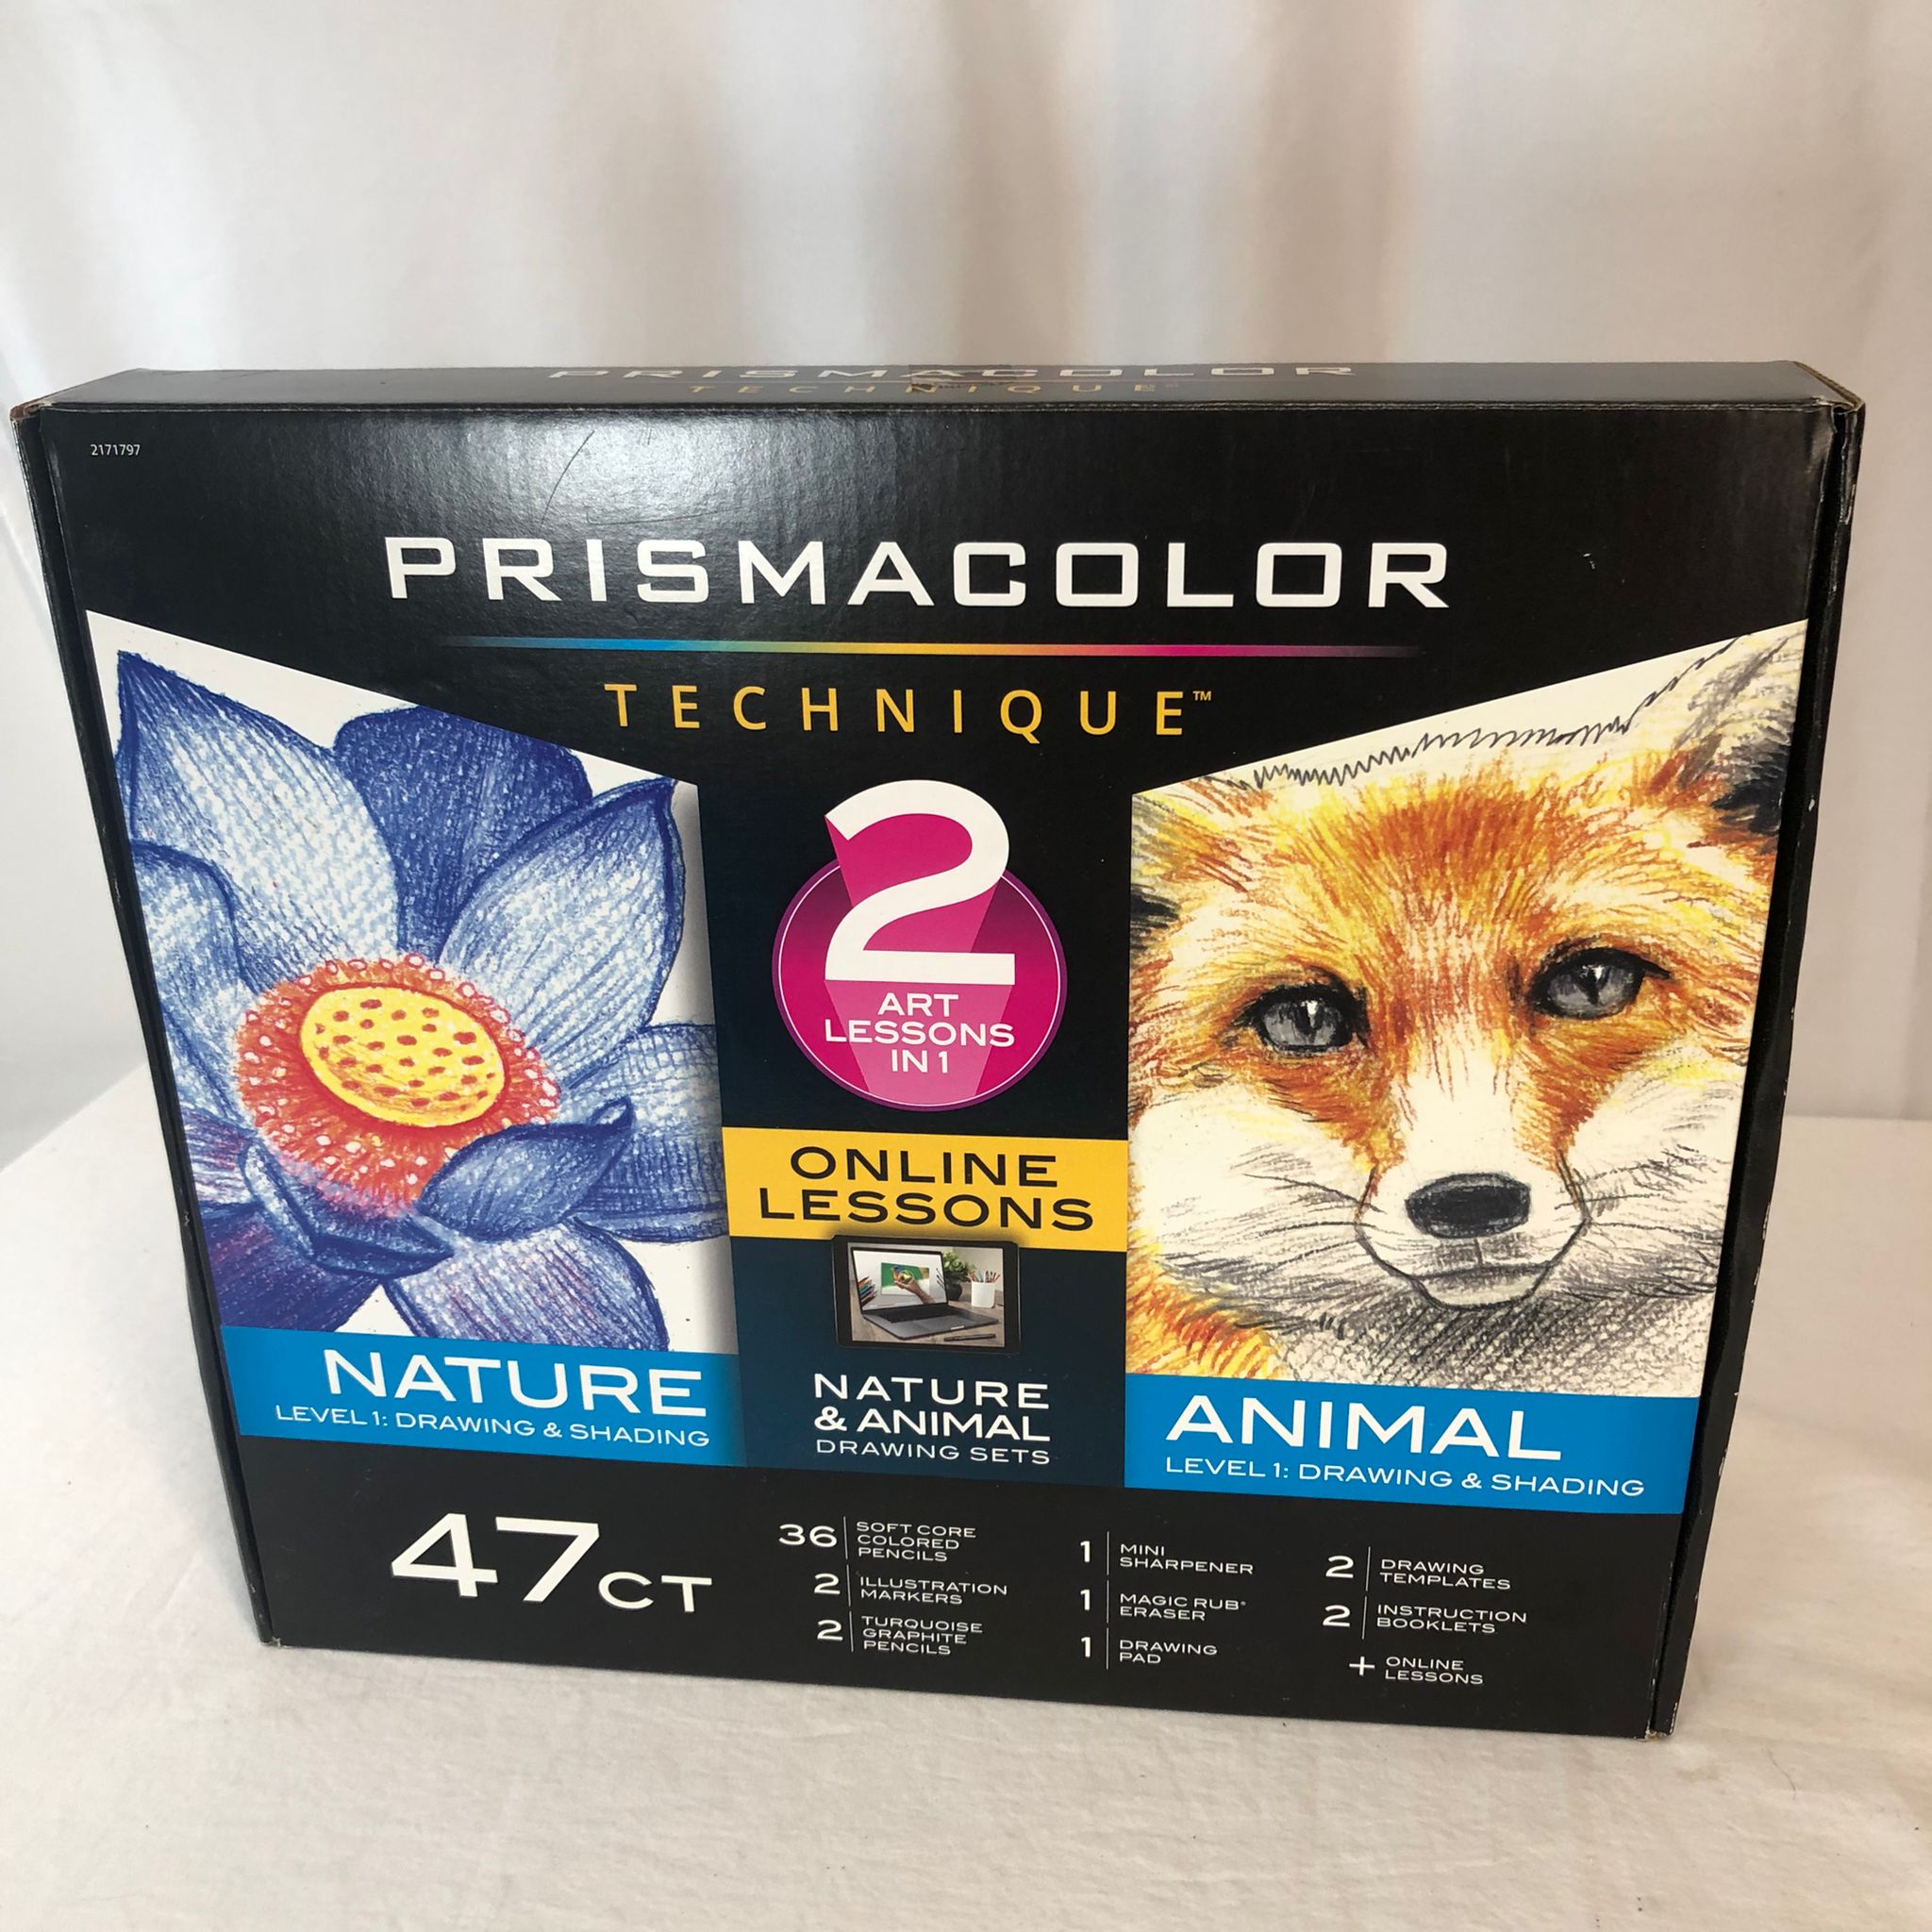 Prismacolor Technique, Art Supplies with Digital Art Lessons, Level 1 Bundle, 47 Count